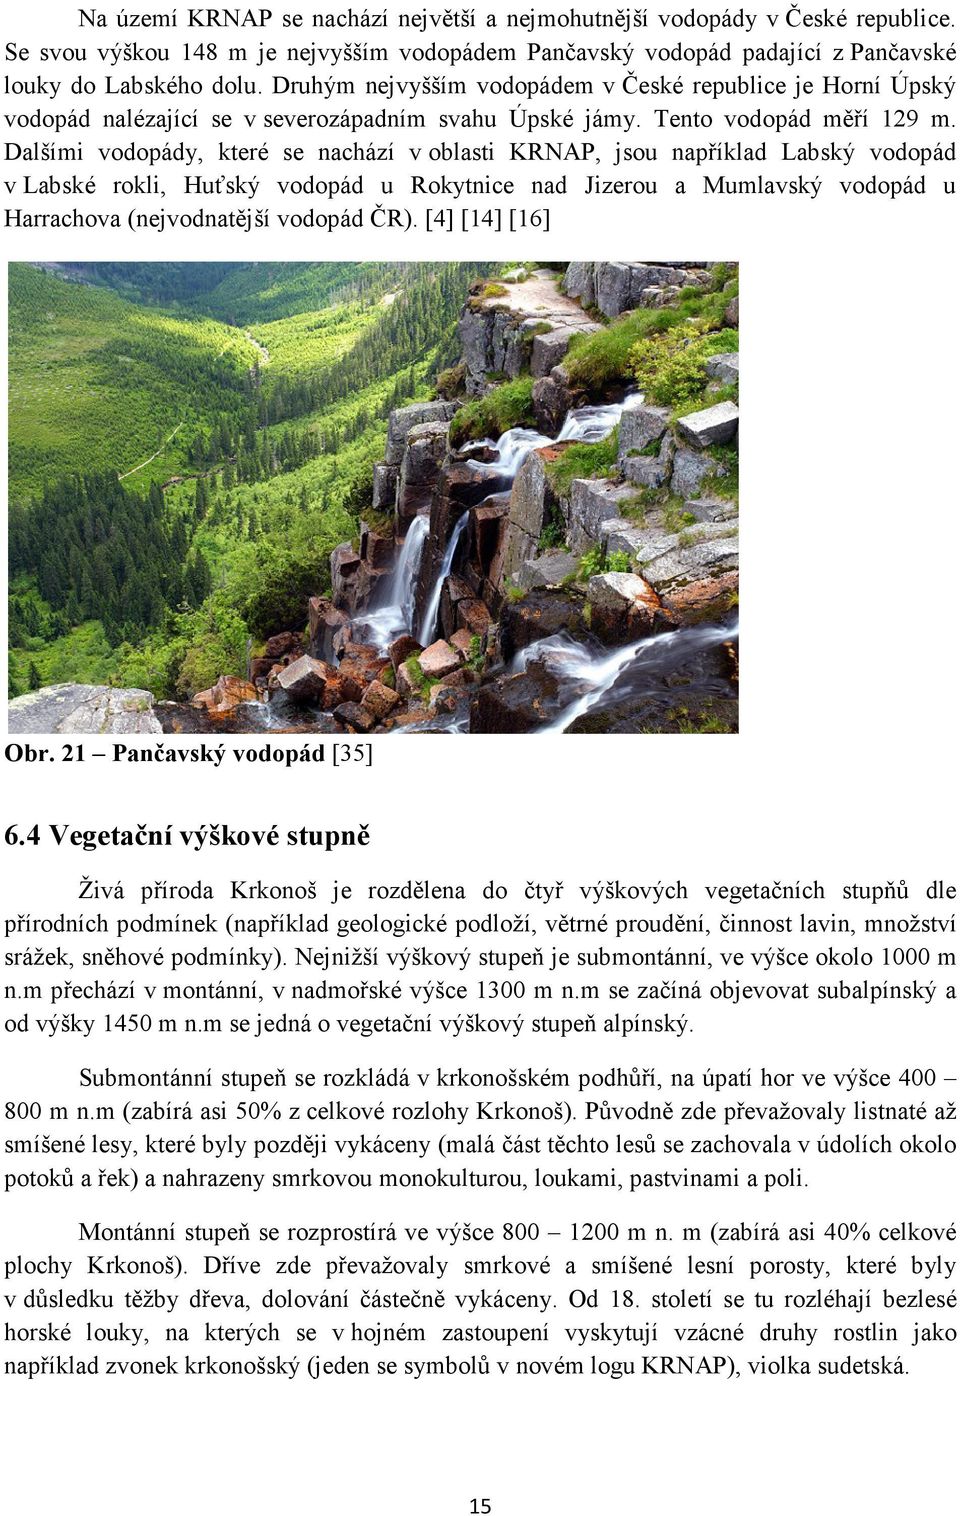 Dalšími vodopády, které se nachází v oblasti KRNAP, jsou například Labský vodopád v Labské rokli, Huťský vodopád u Rokytnice nad Jizerou a Mumlavský vodopád u Harrachova (nejvodnatější vodopád ČR).